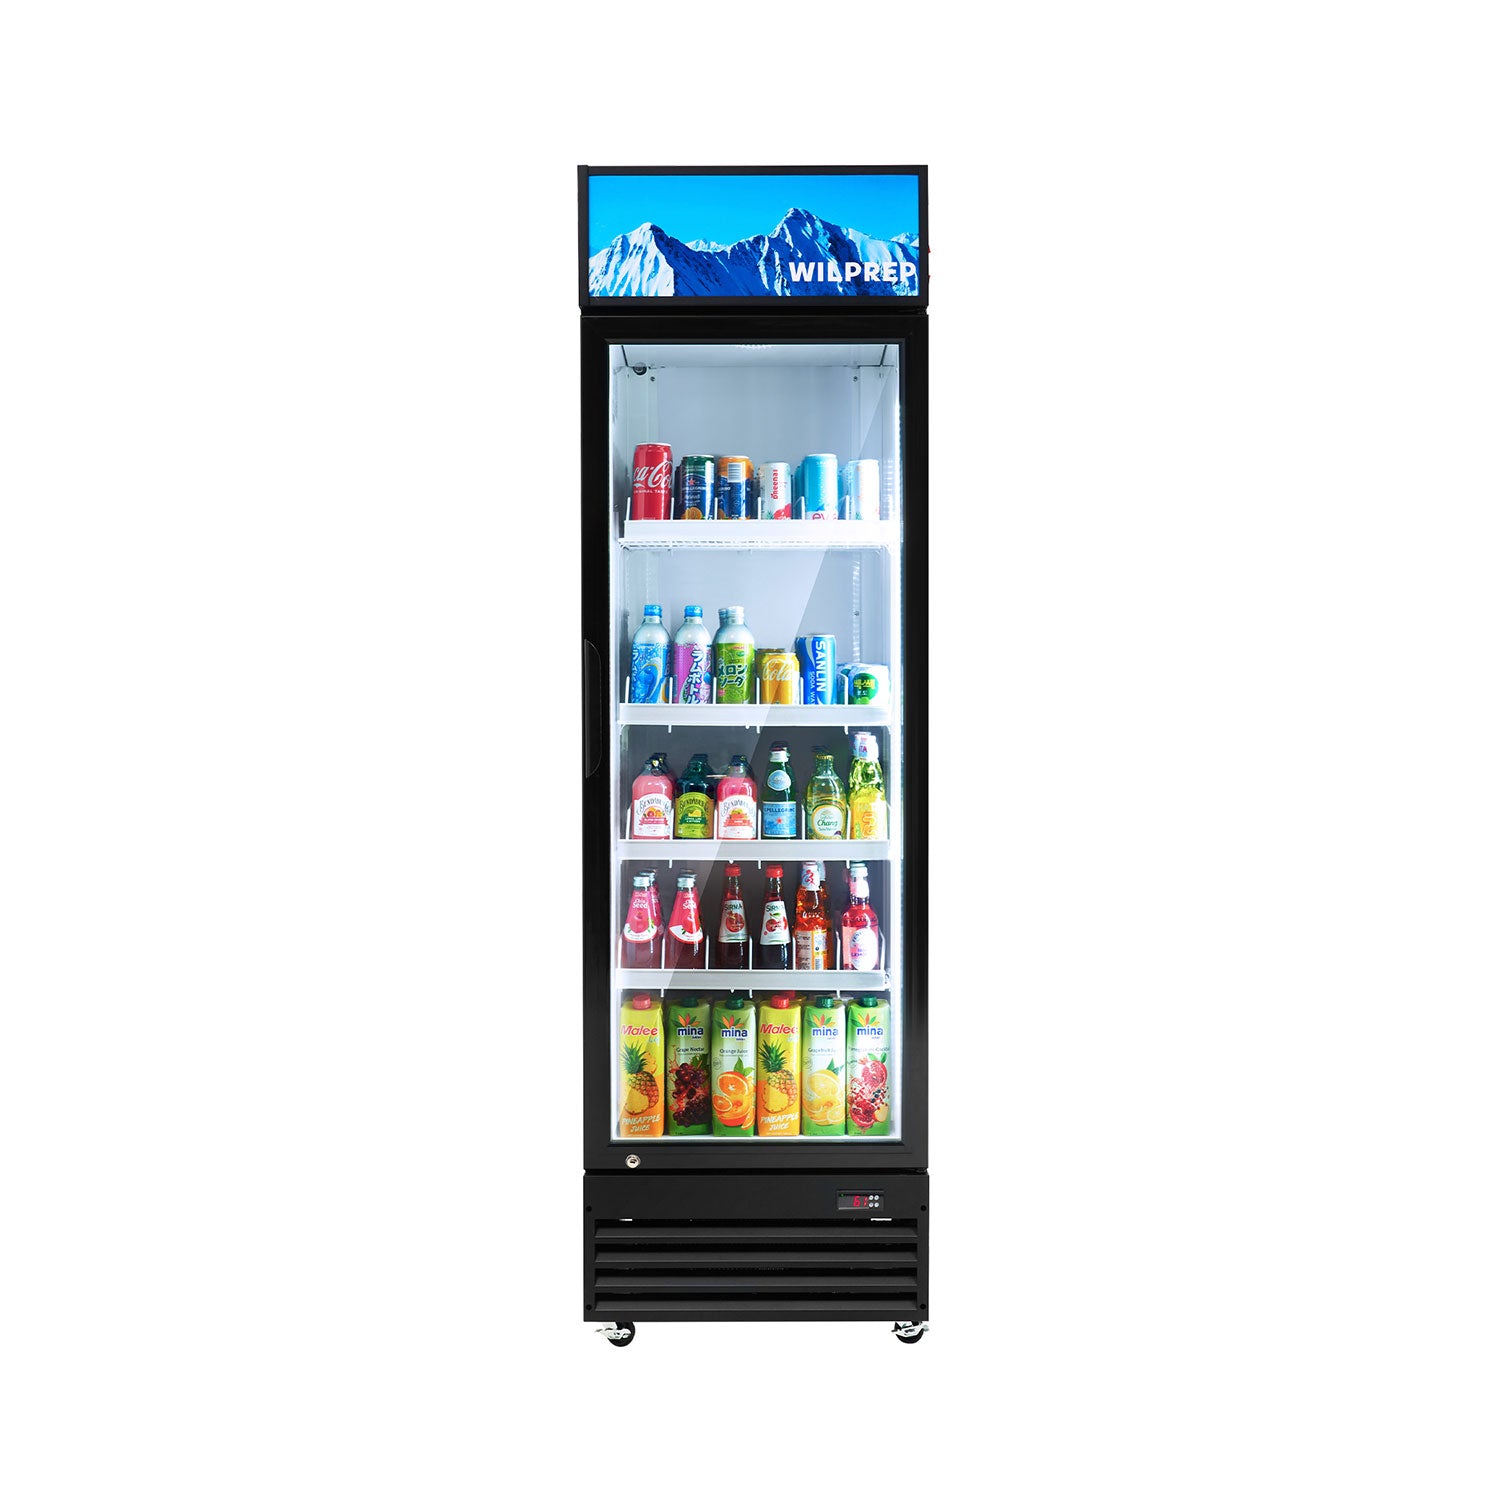 Wilprep 27.6 inch single door commercial refrigerator